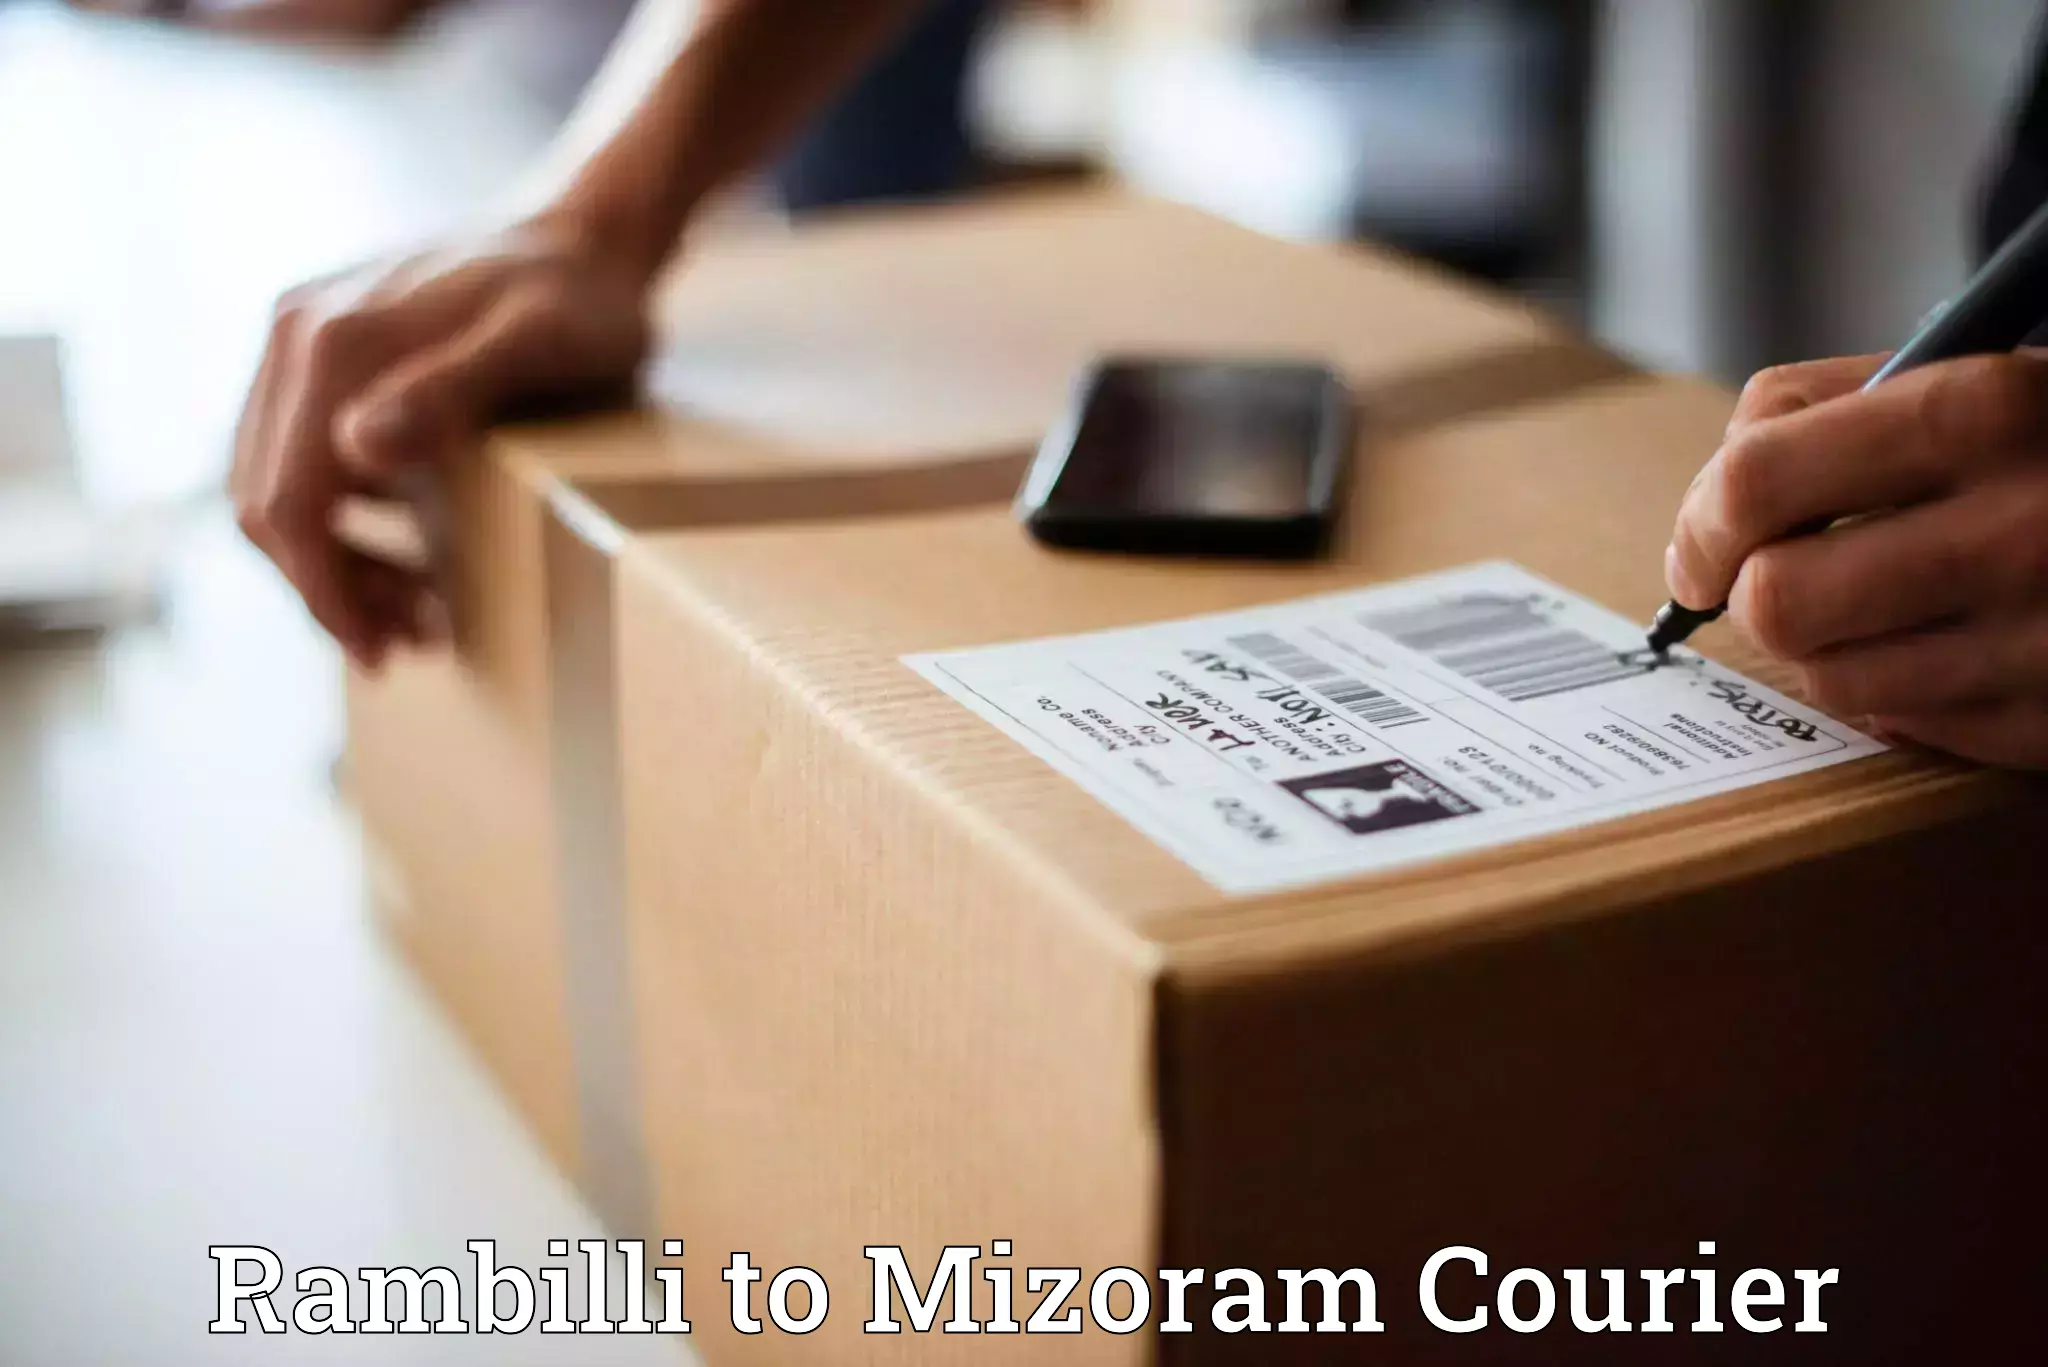 Local delivery service Rambilli to Mizoram